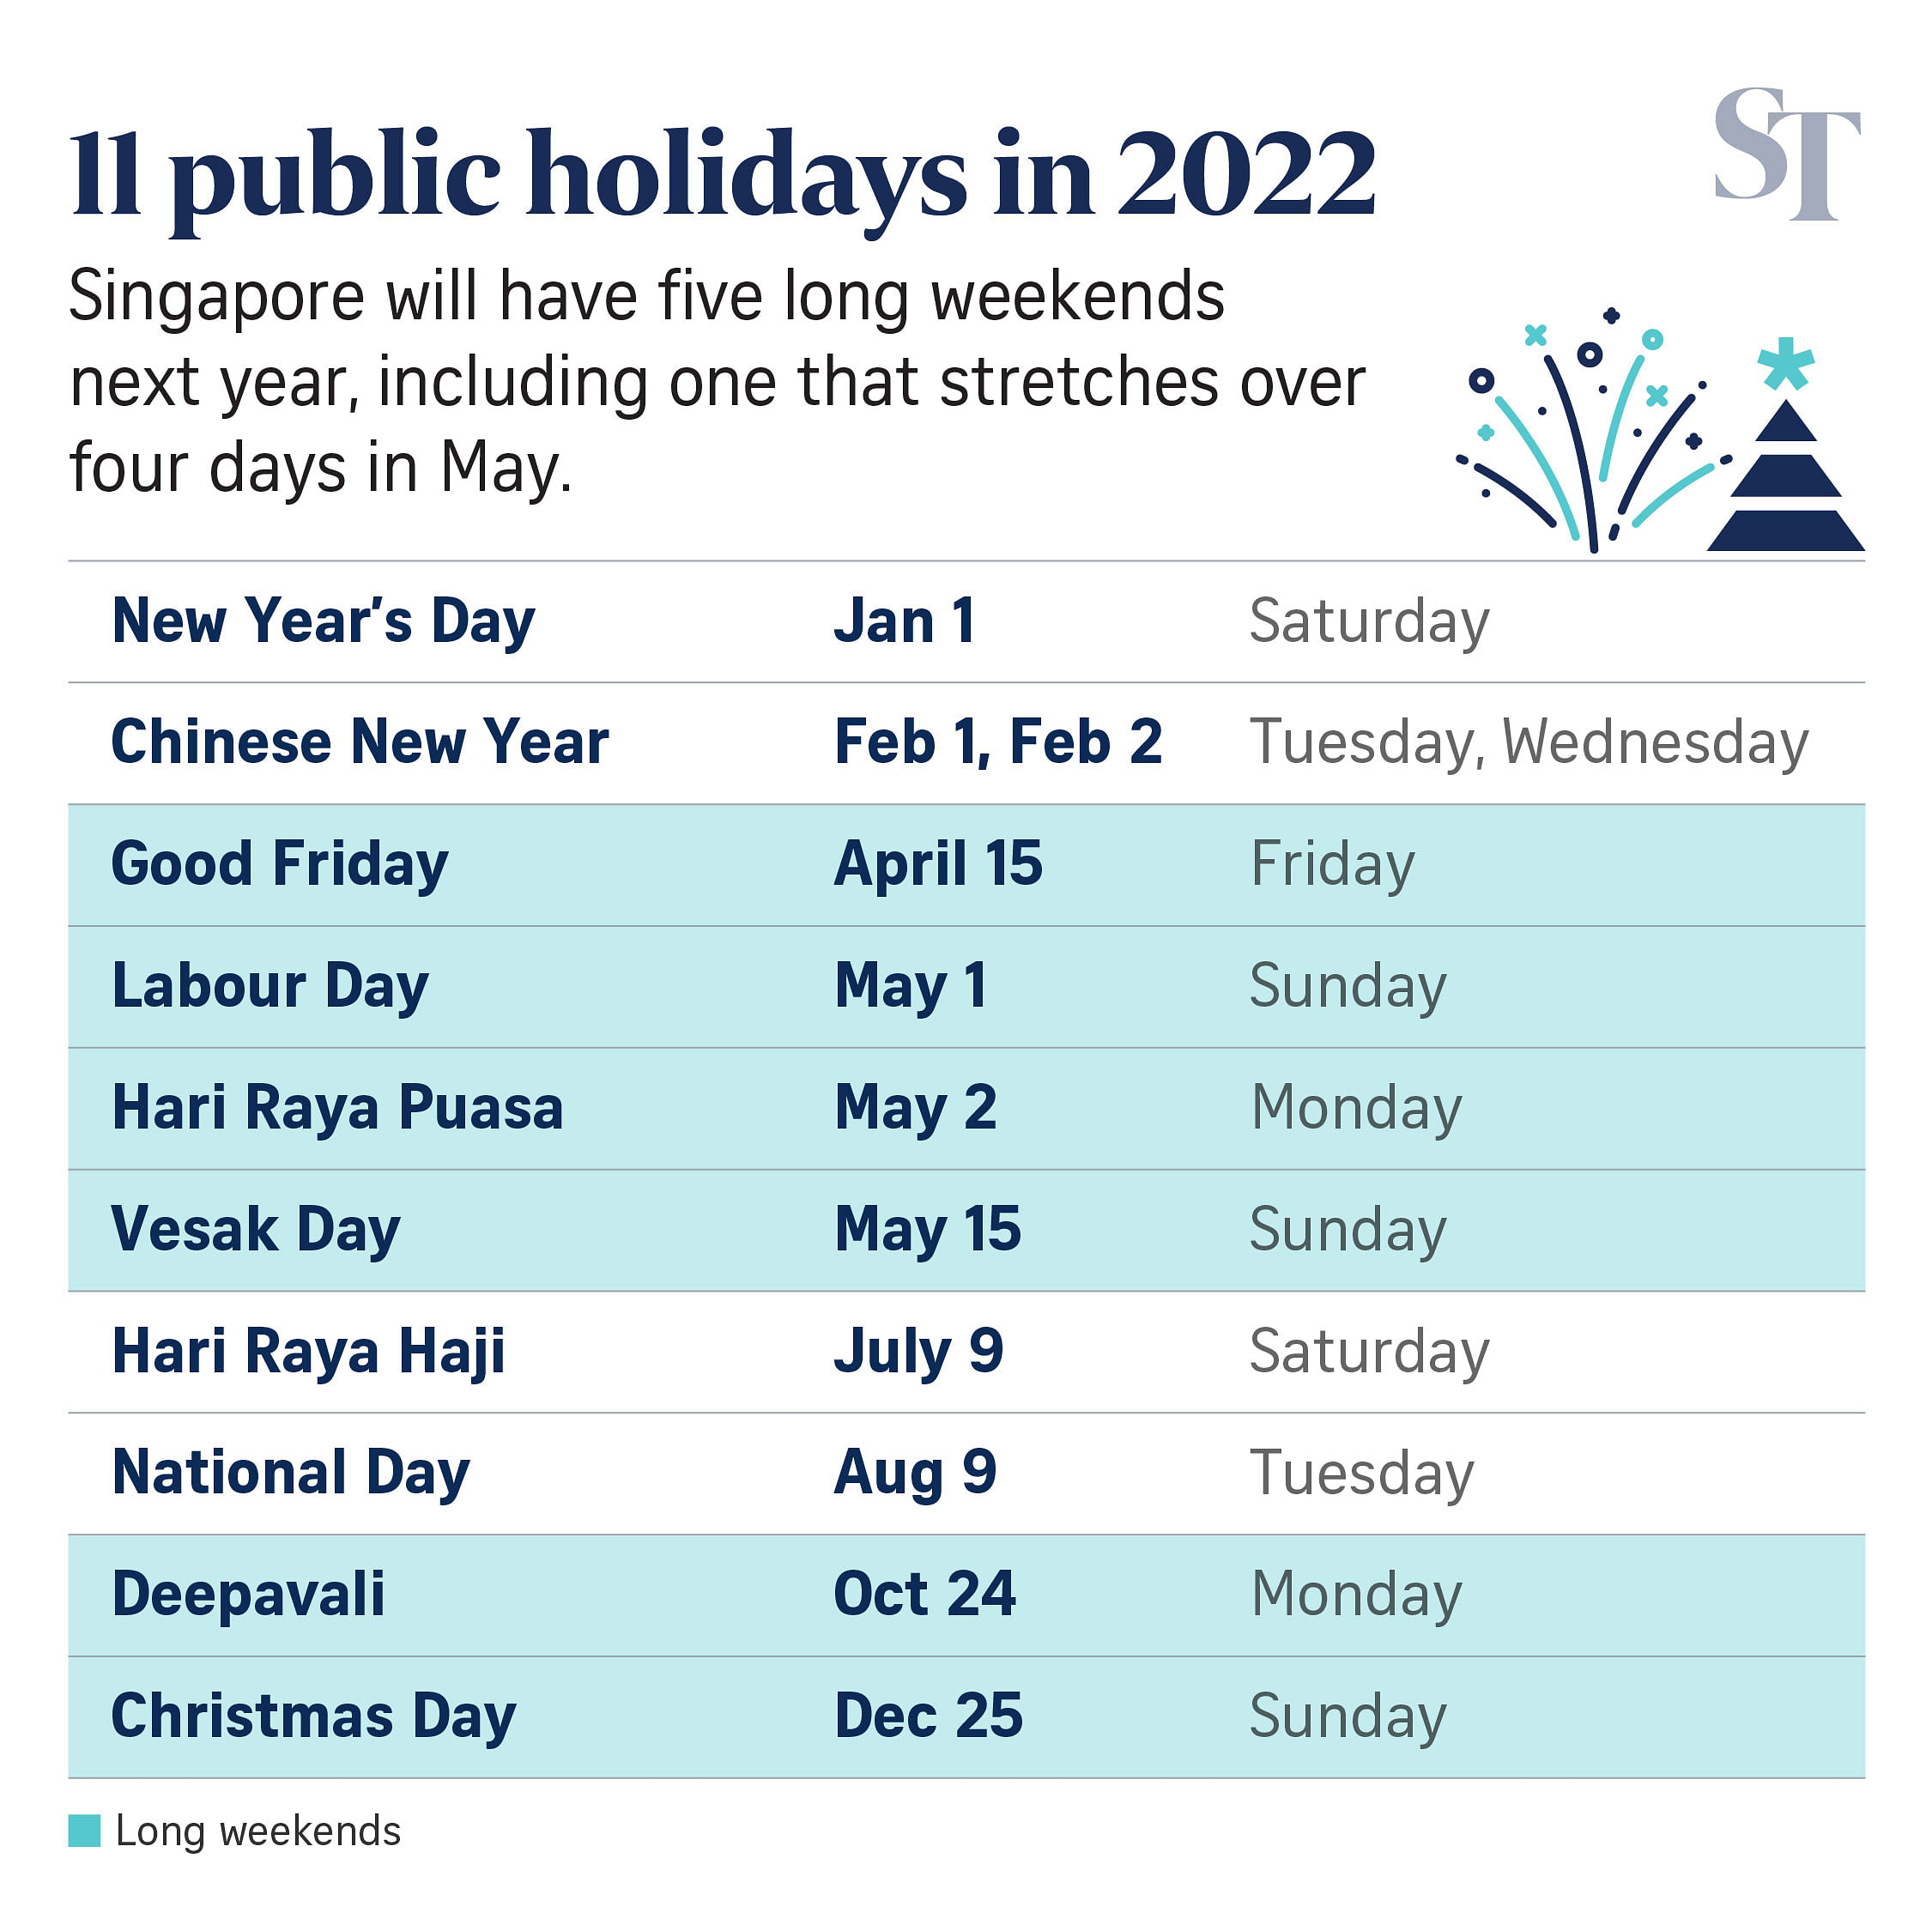 Kl public holiday 2022 2022 Malaysia